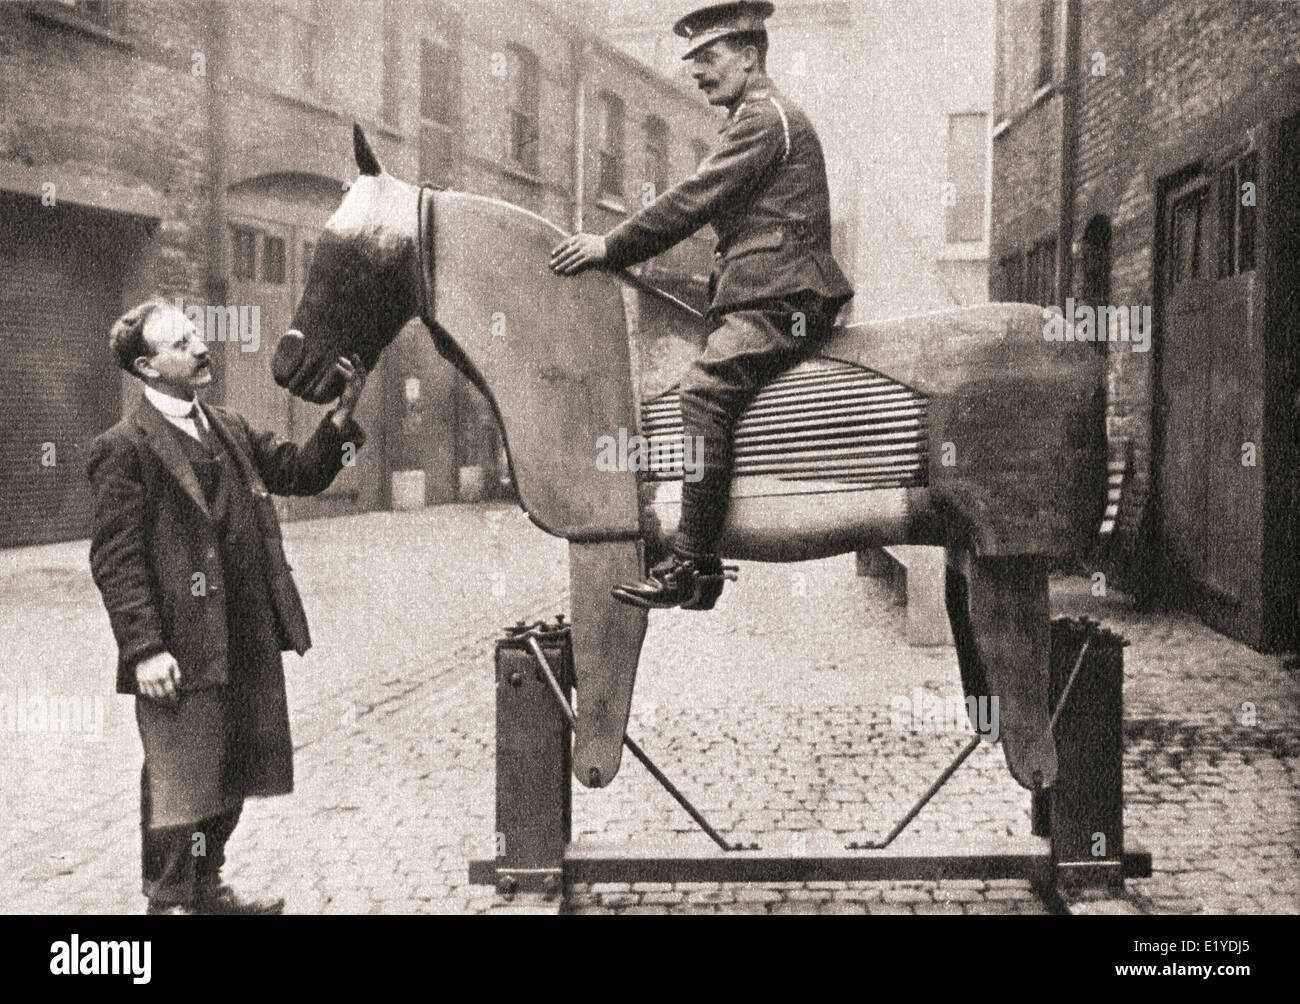 Matières premières formation recrute les rudiments de l'équitation sur des chevaux factices au début de la PREMIÈRE GUERRE MONDIALE en 1914. Banque D'Images